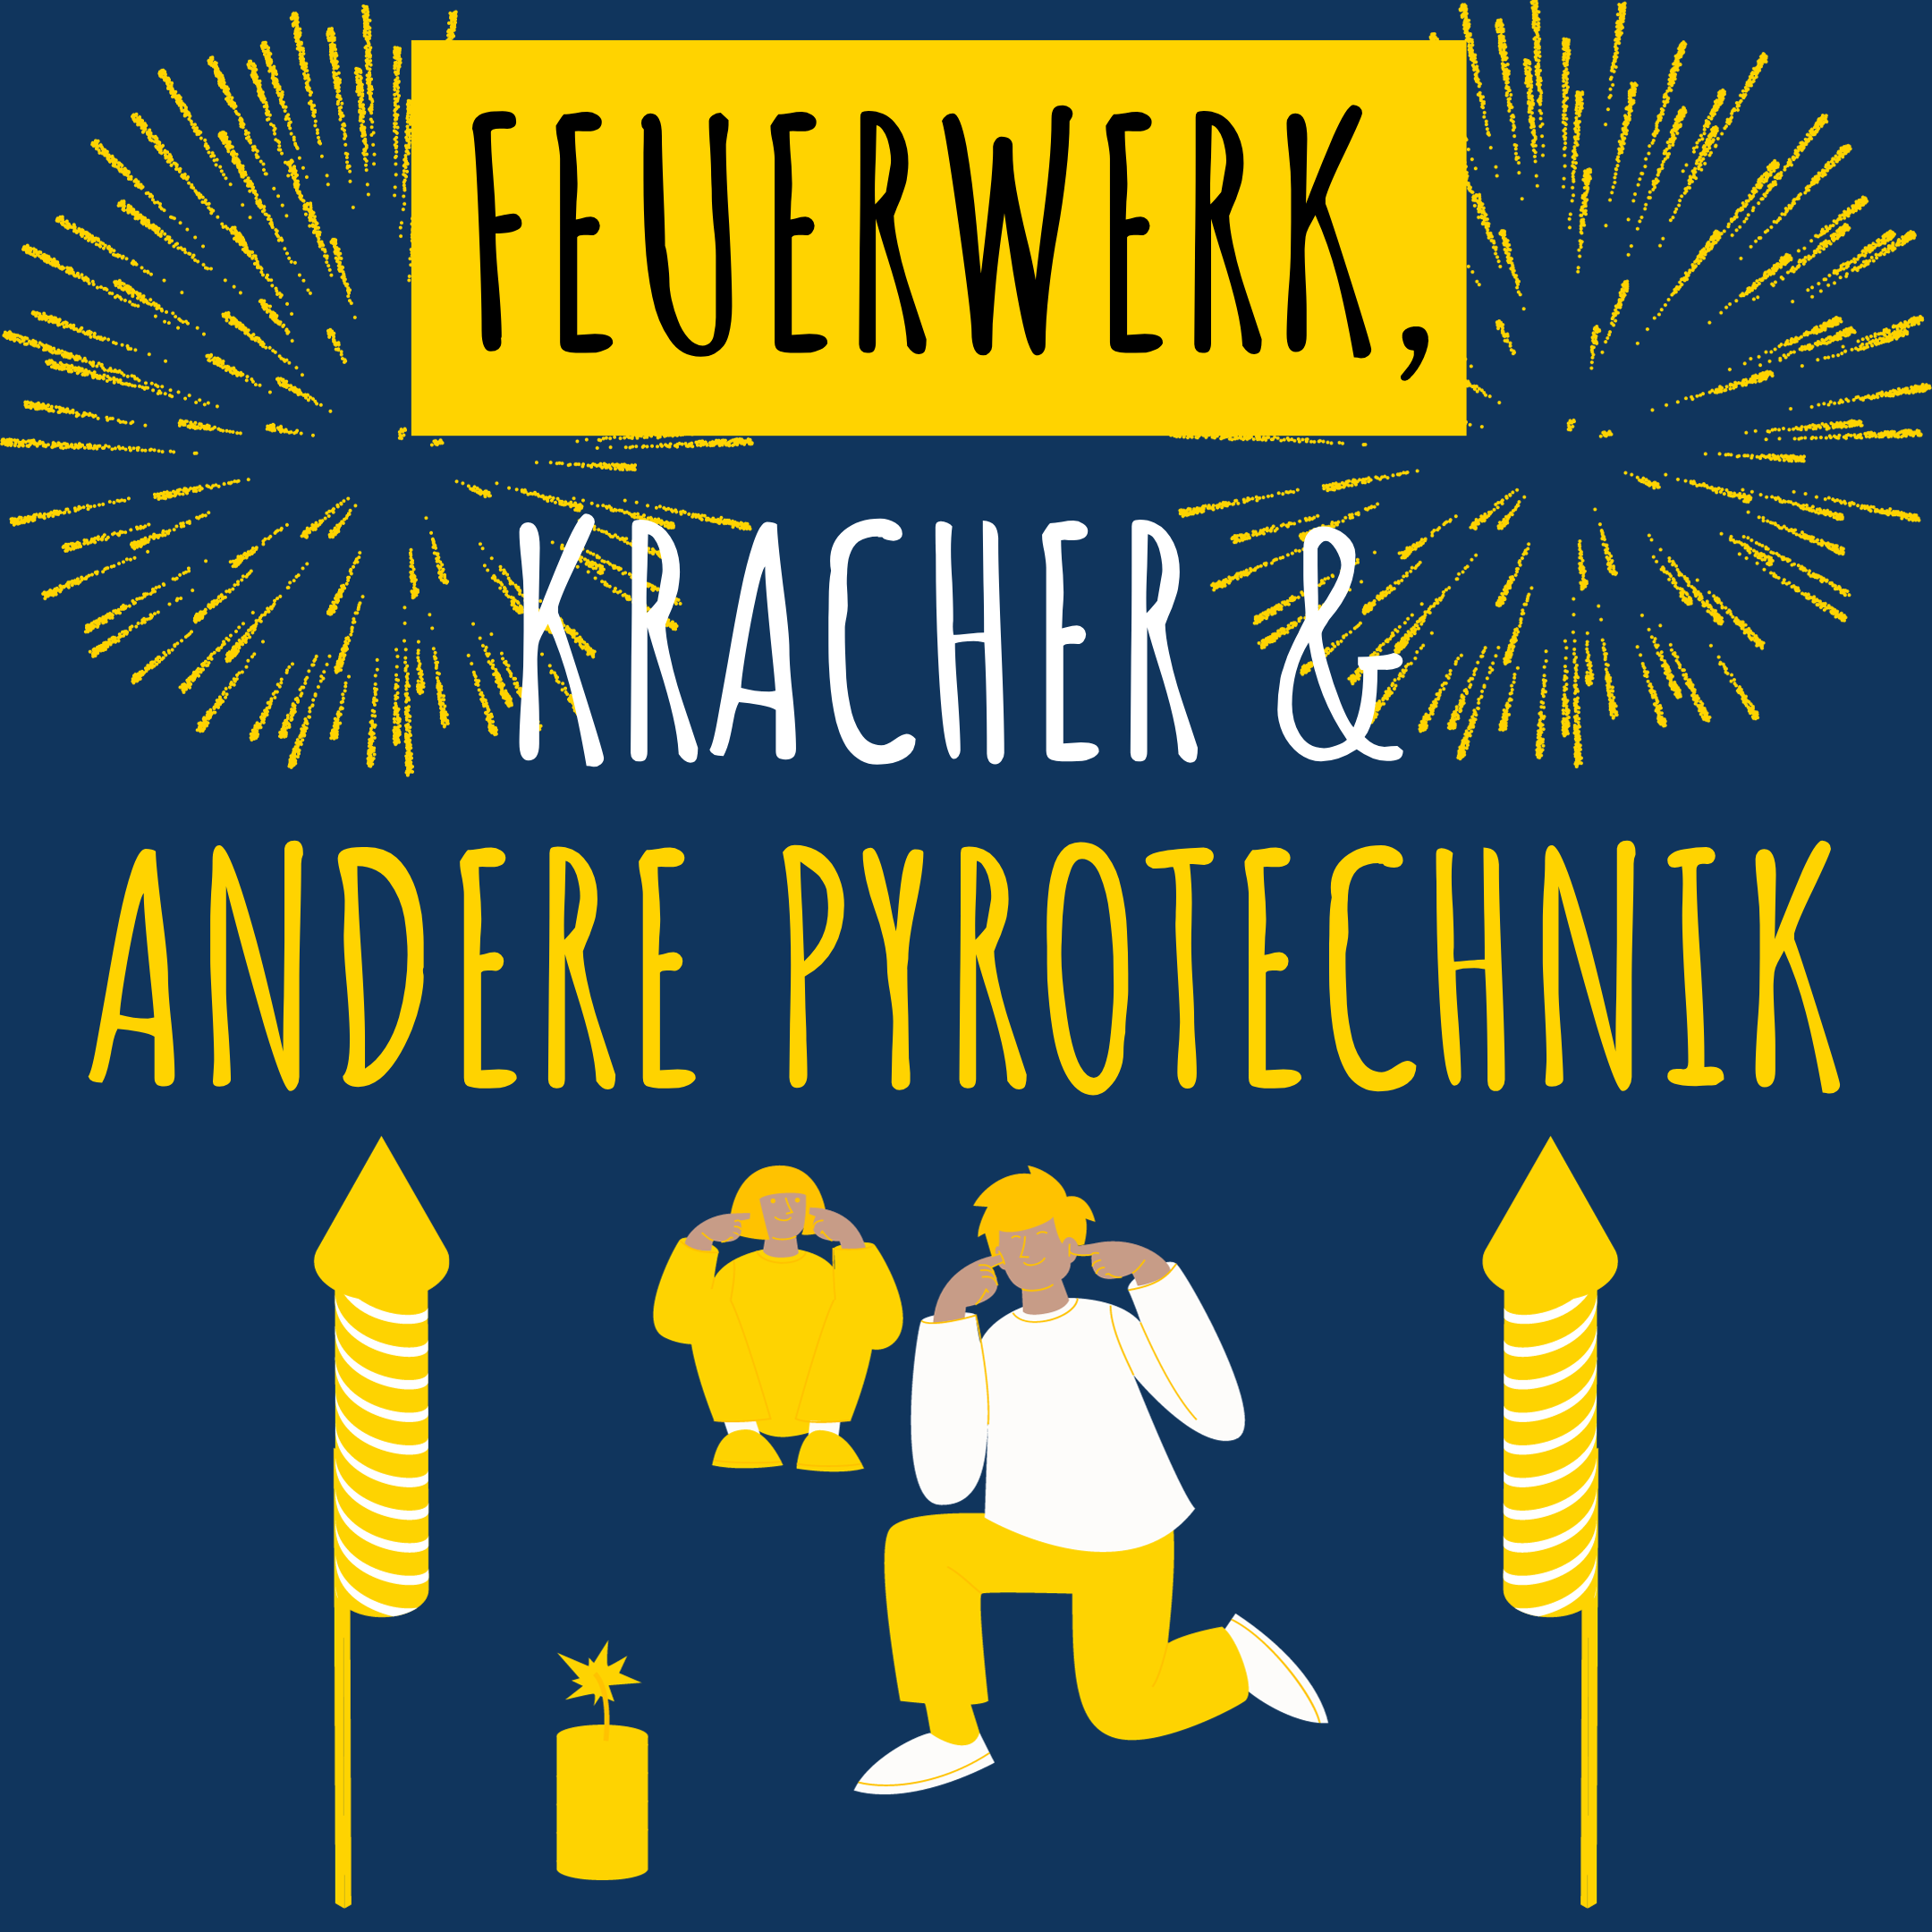 Feuerwerk, Kracher & andere Pyrotechnik